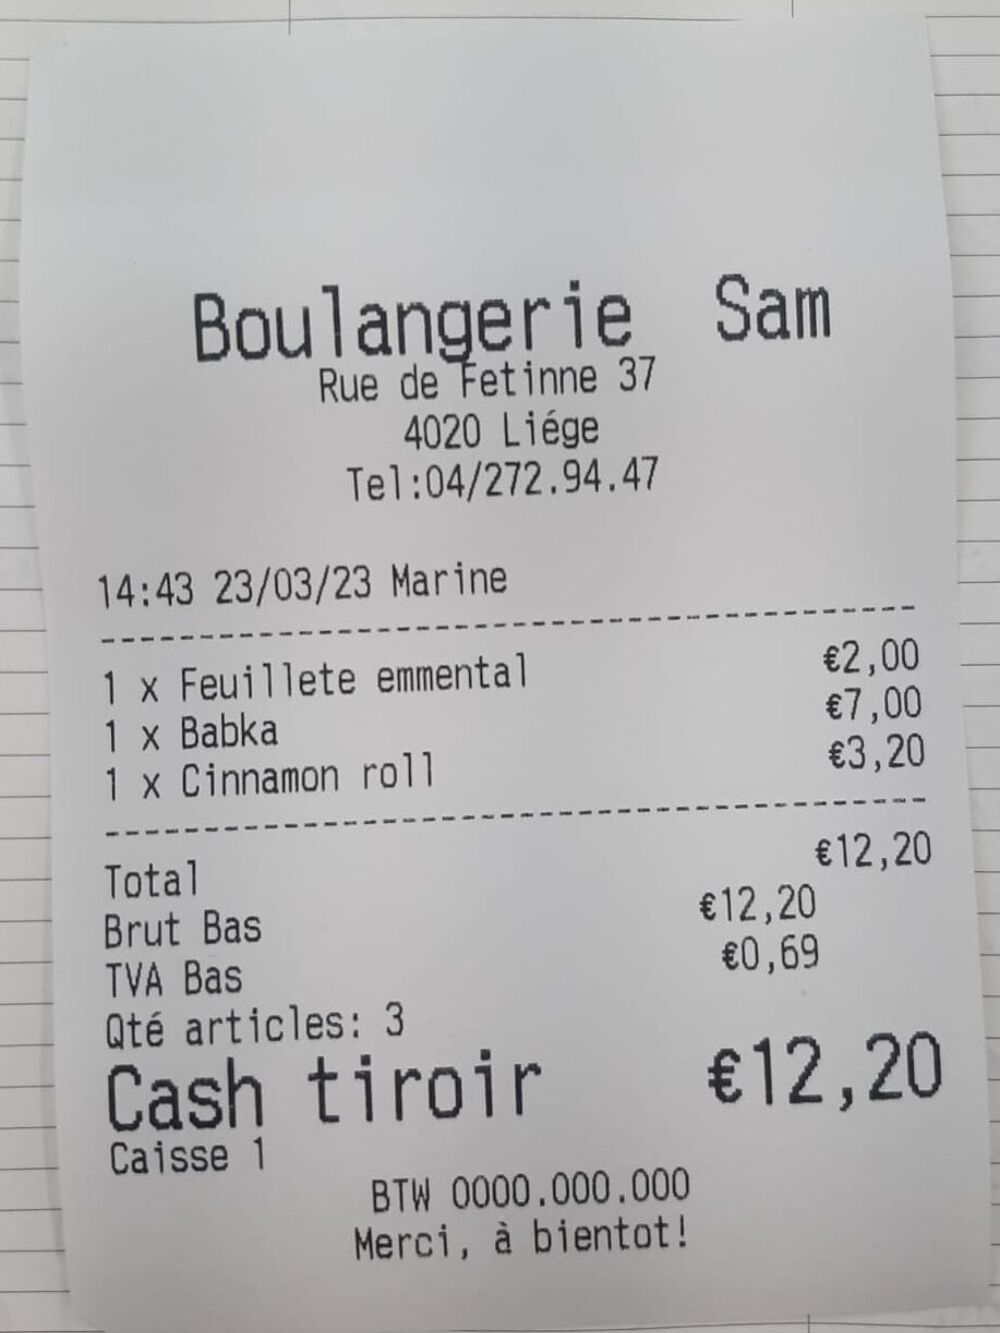 Sam-Boulangerie.jpg